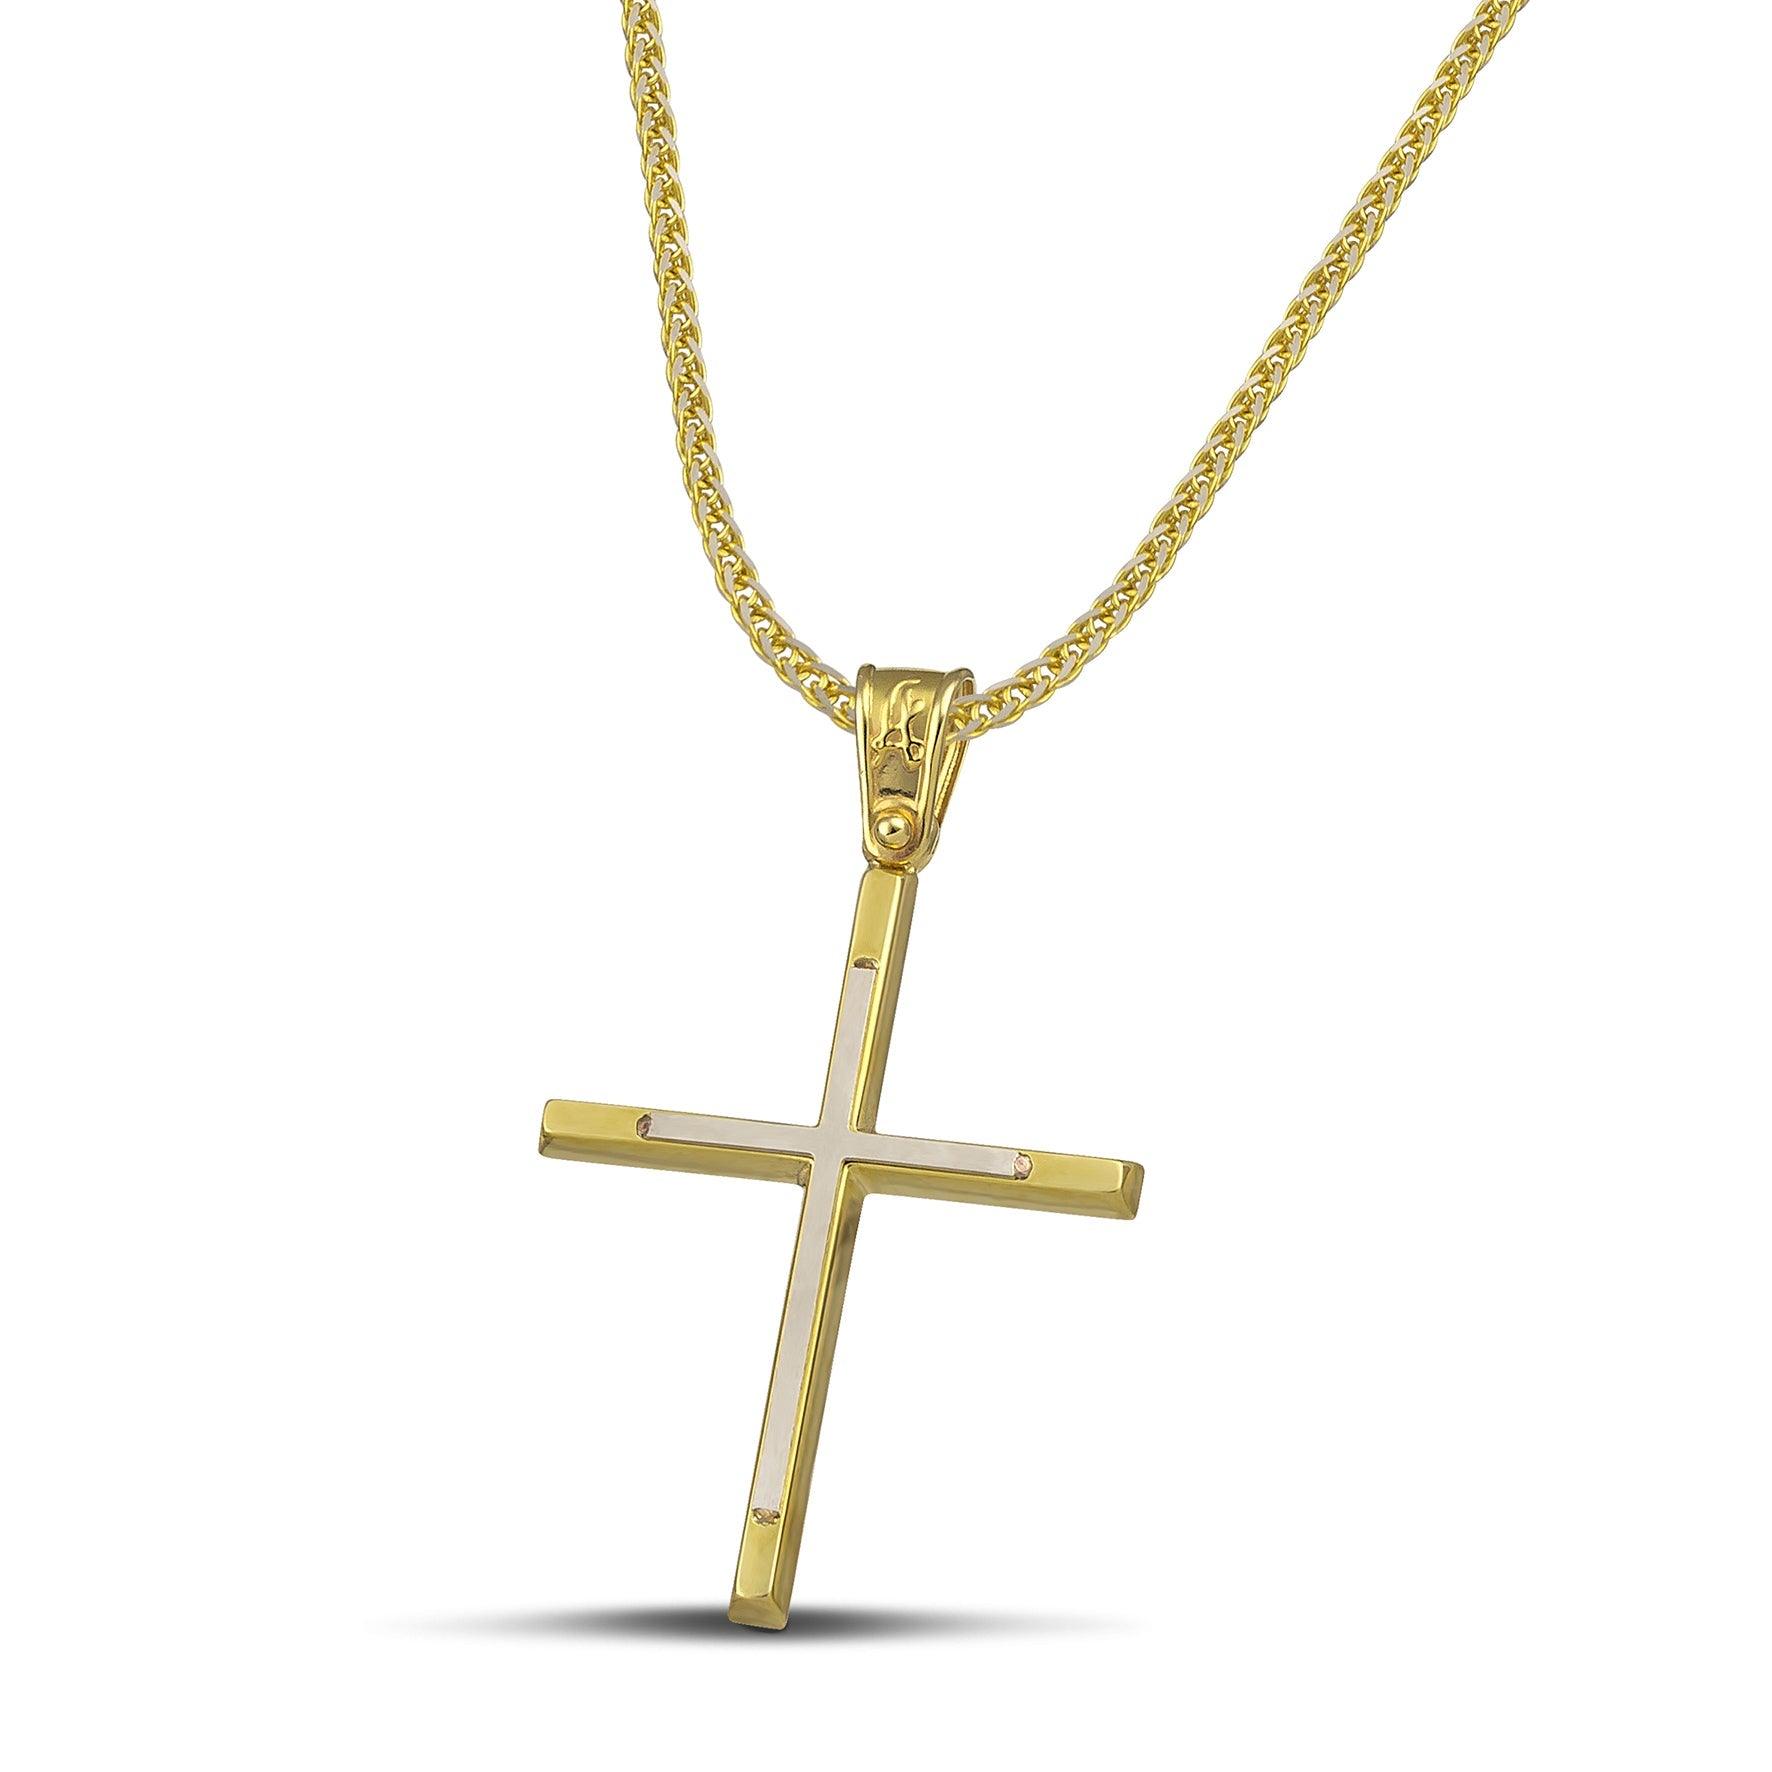 Γυναικείος σταυρός από χρυσό 14 καρατίων και λευκόχρυσο, με παχιά αλυσίδα.